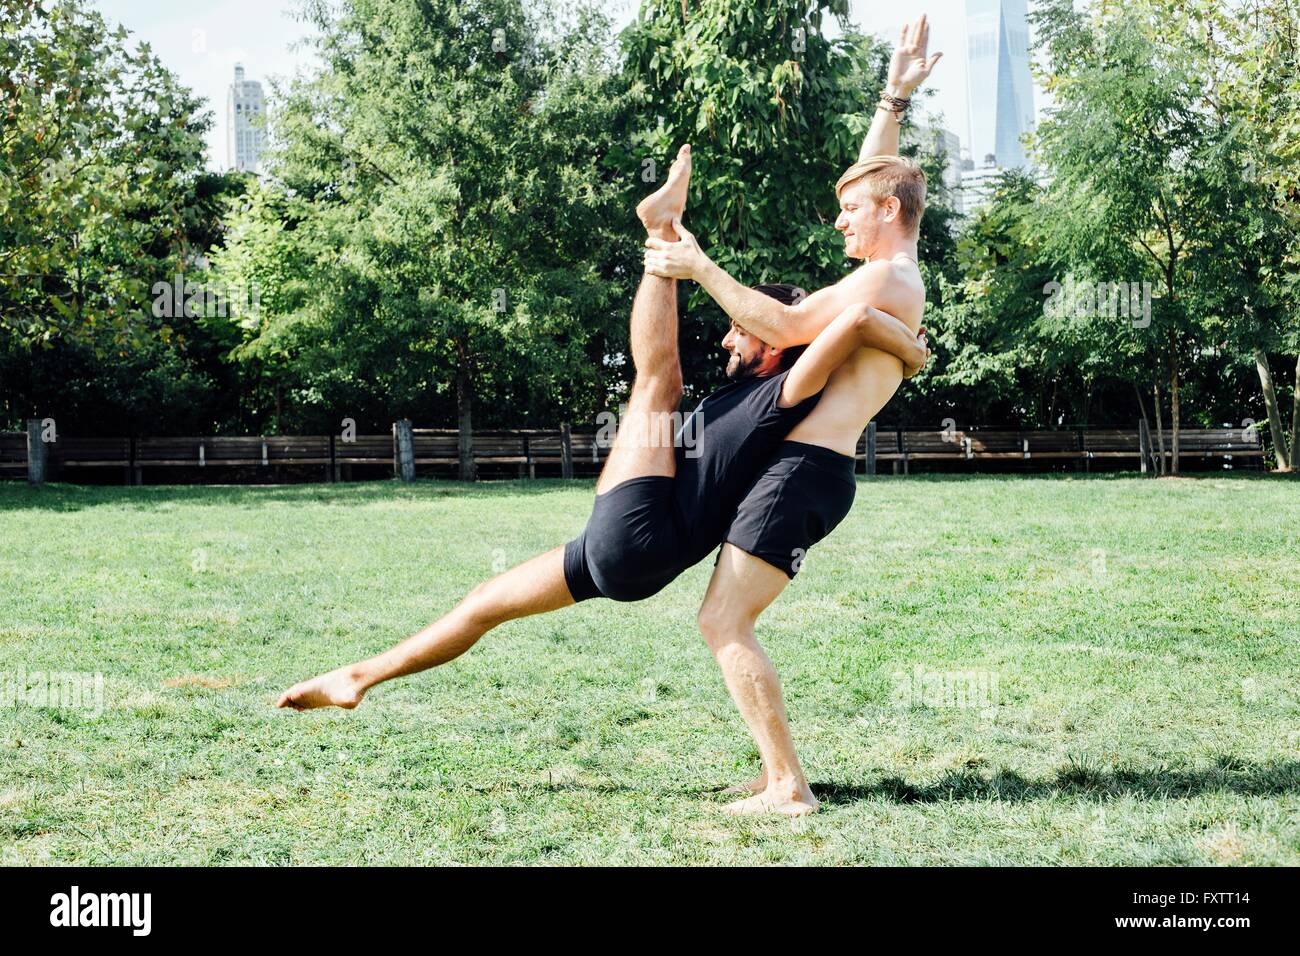 Zwei Männer, die Yoga praktizieren Liftposition im park Stockfoto